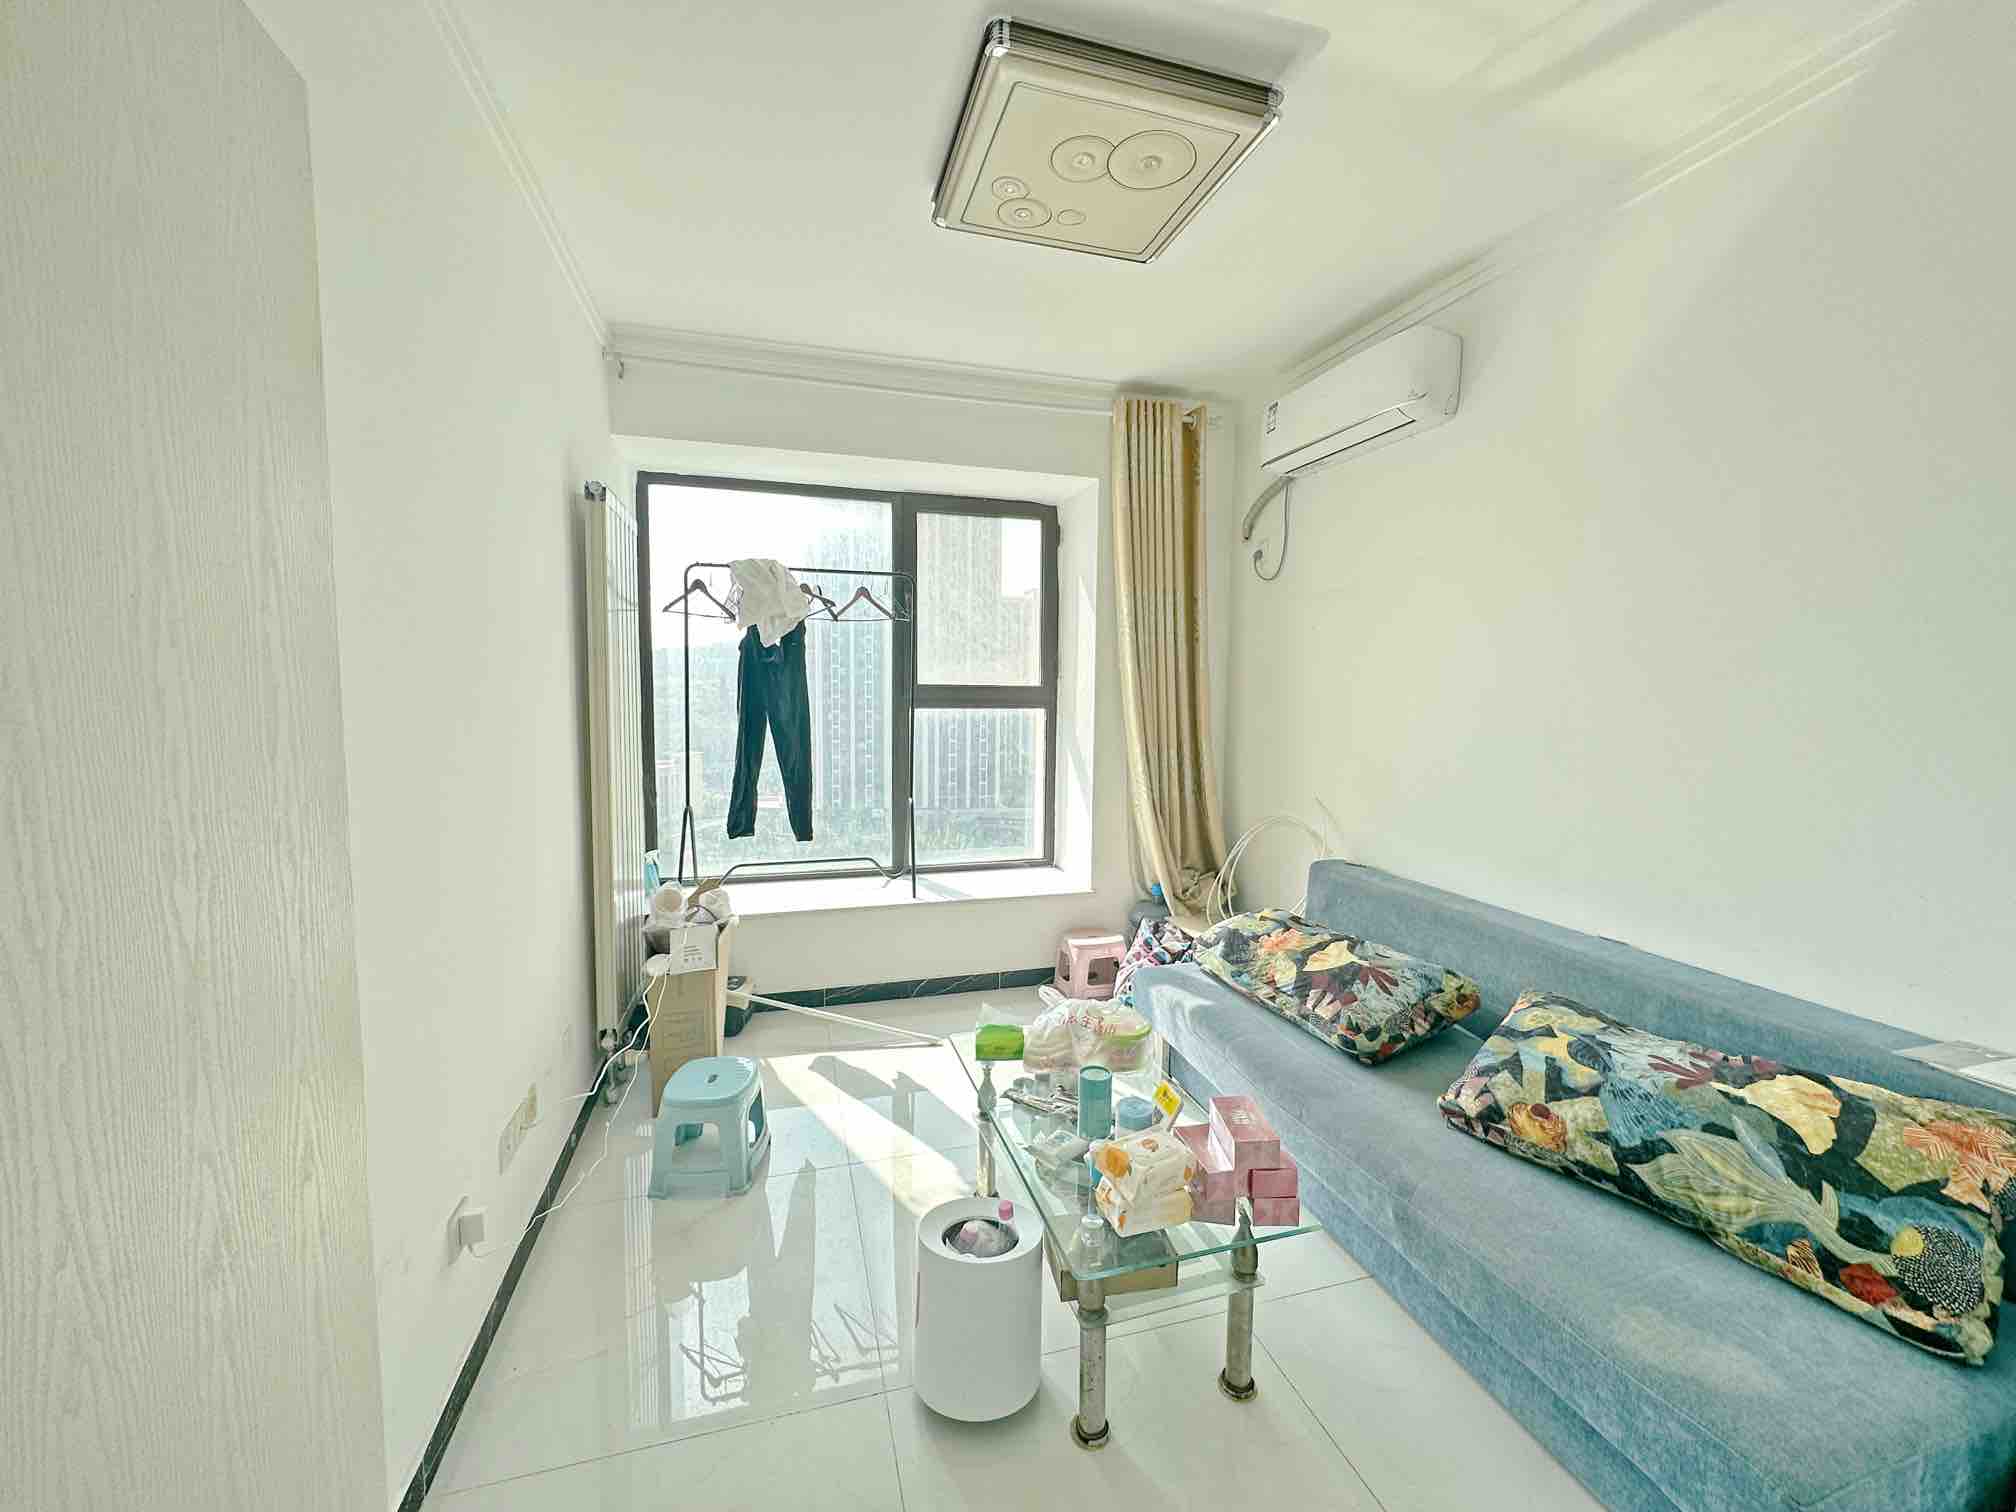 中海国际公馆 小型一室公寓 房主着急用钱诚意出售